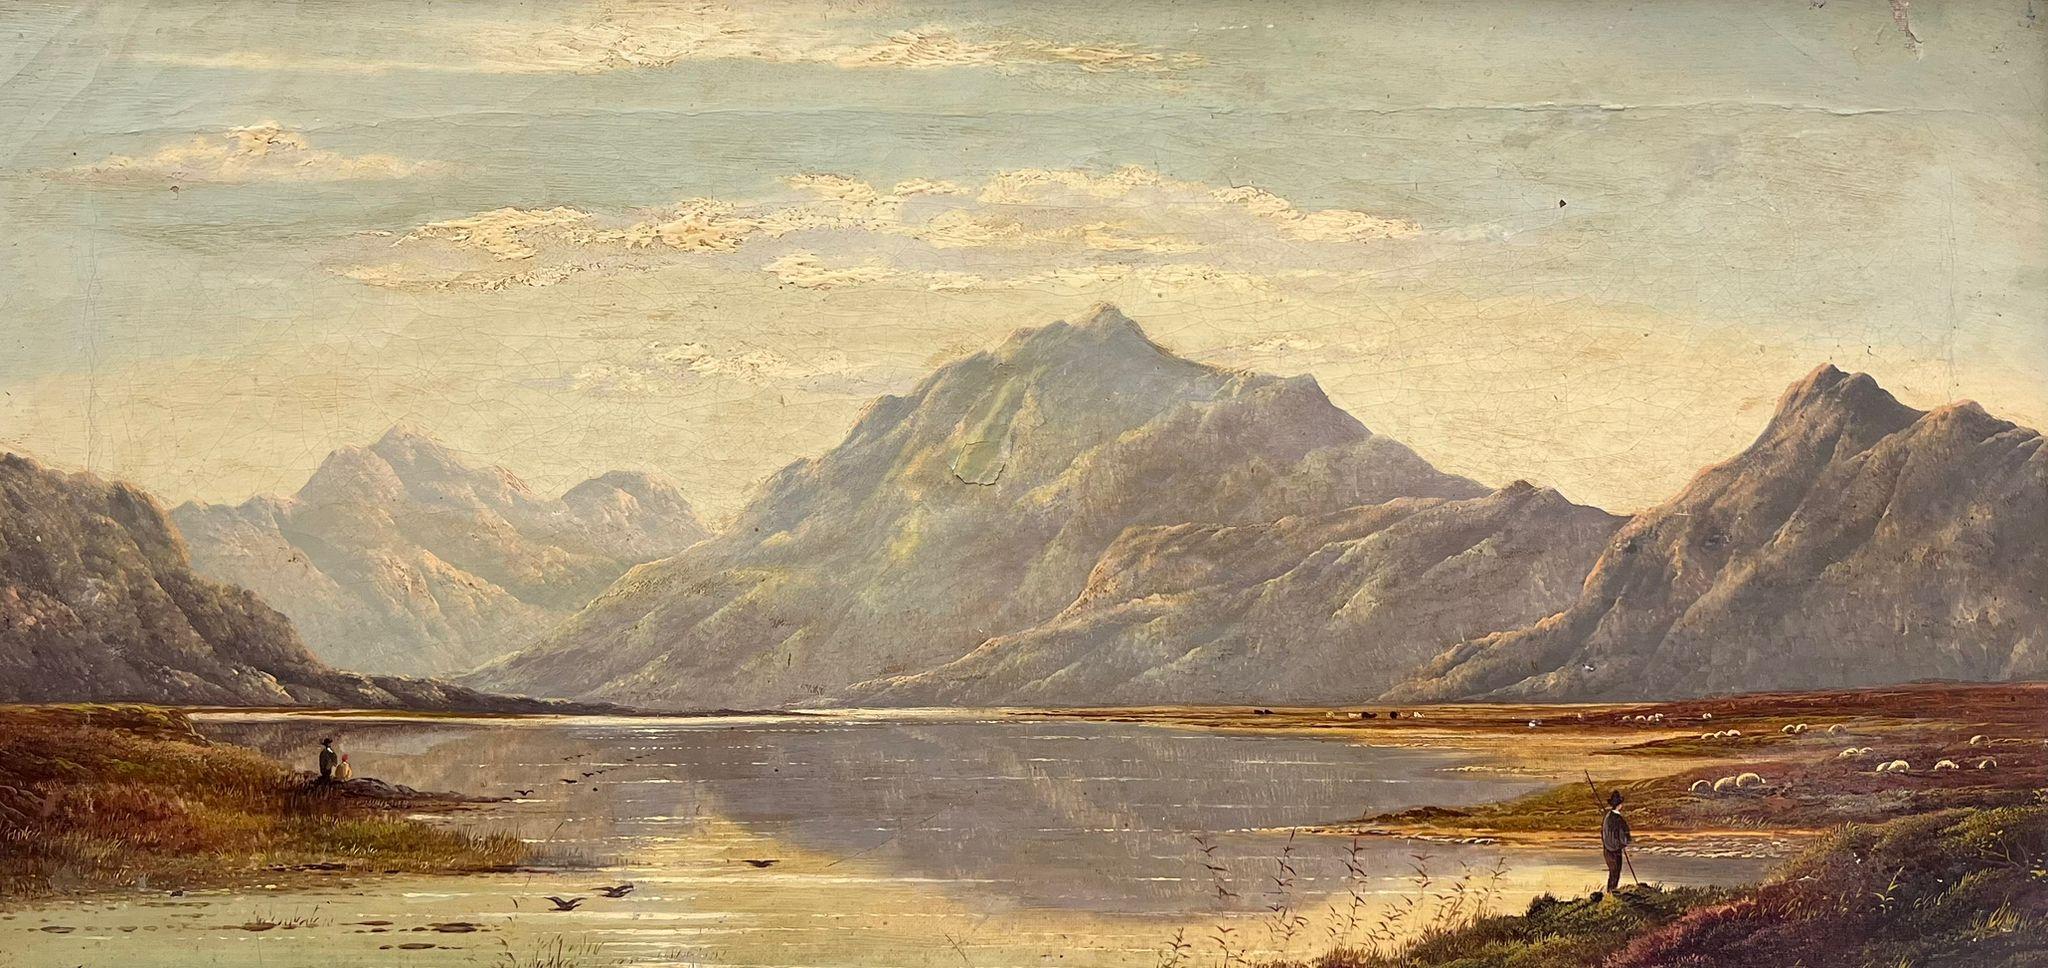 Figurative Painting Charles Leslie - Fine peinture à l'huile écossaise du 19ème siècle représentant une scène de Loch Scene, artiste répertorié